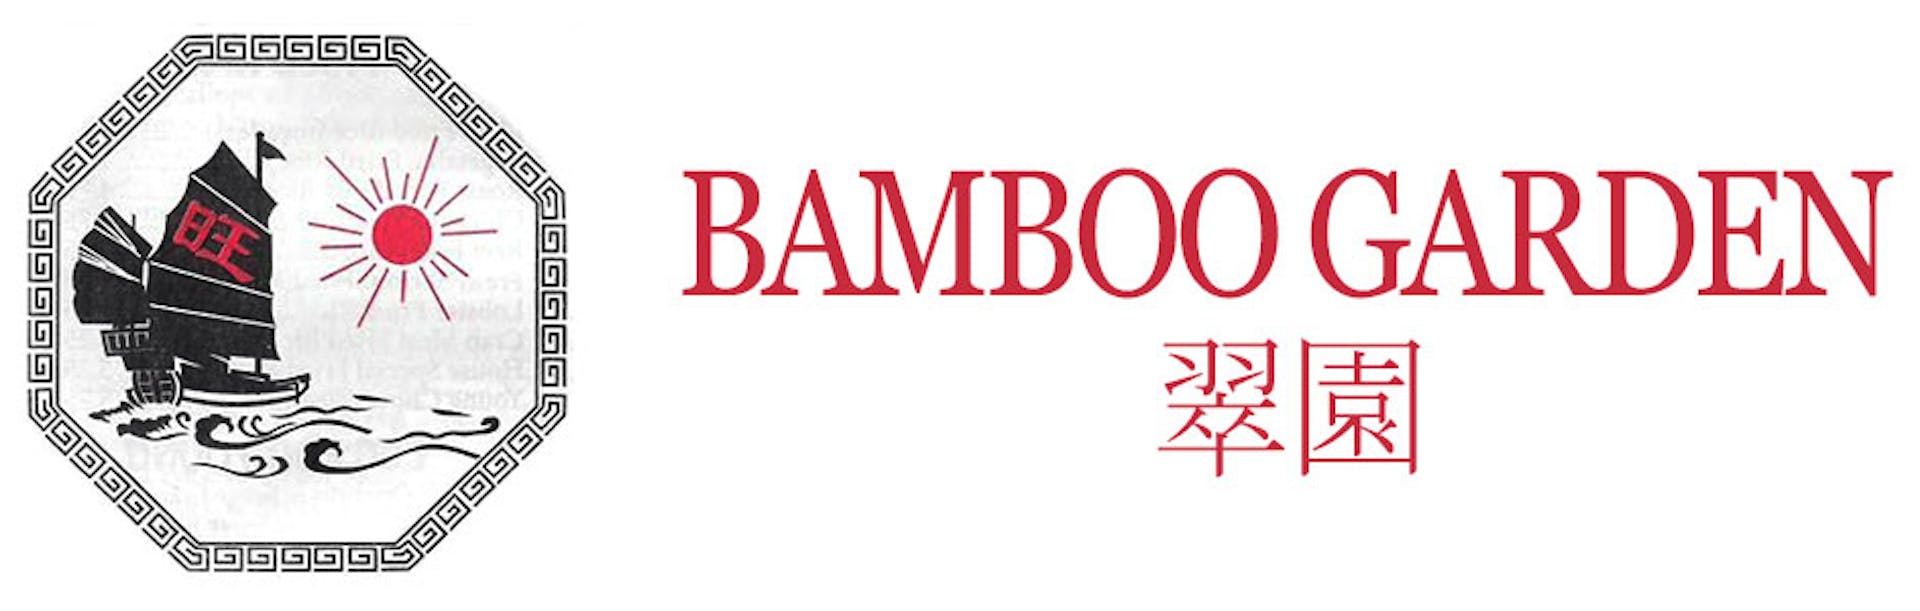 Bamboo Garden Restaurant South Plainfield Nj 07080 Menu